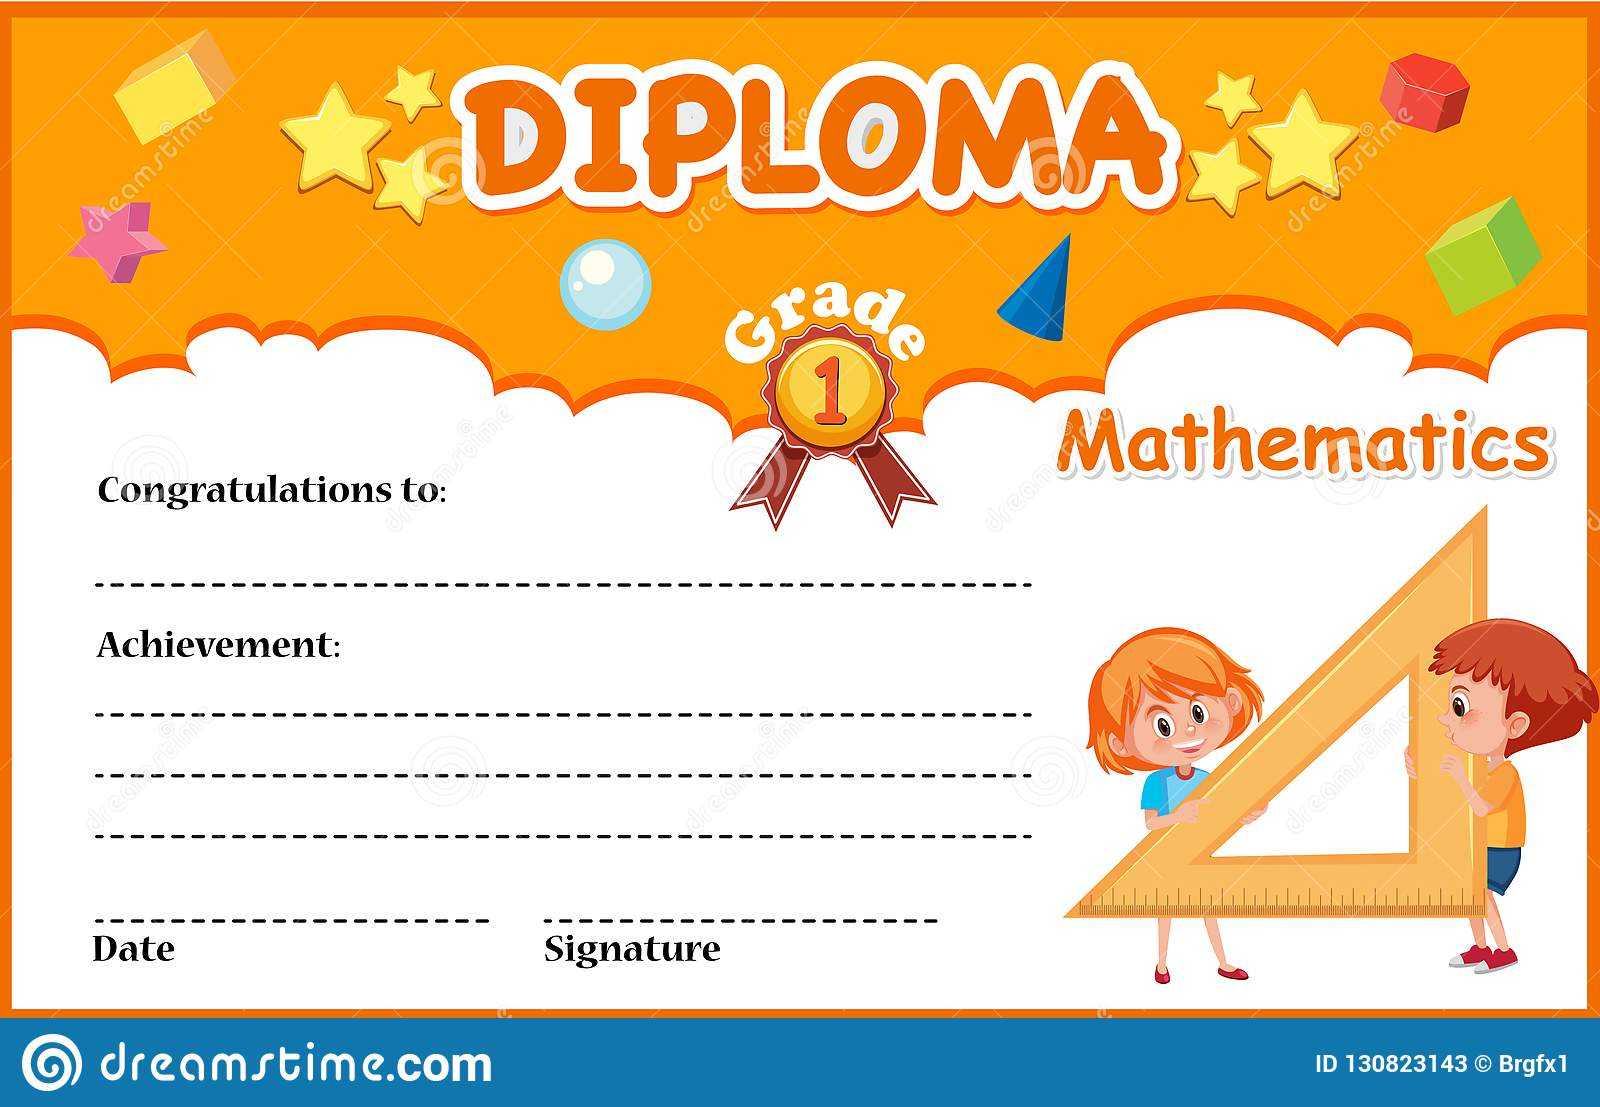 Mathematics Diploma Certificate Template Stock Vector For Math Certificate Template